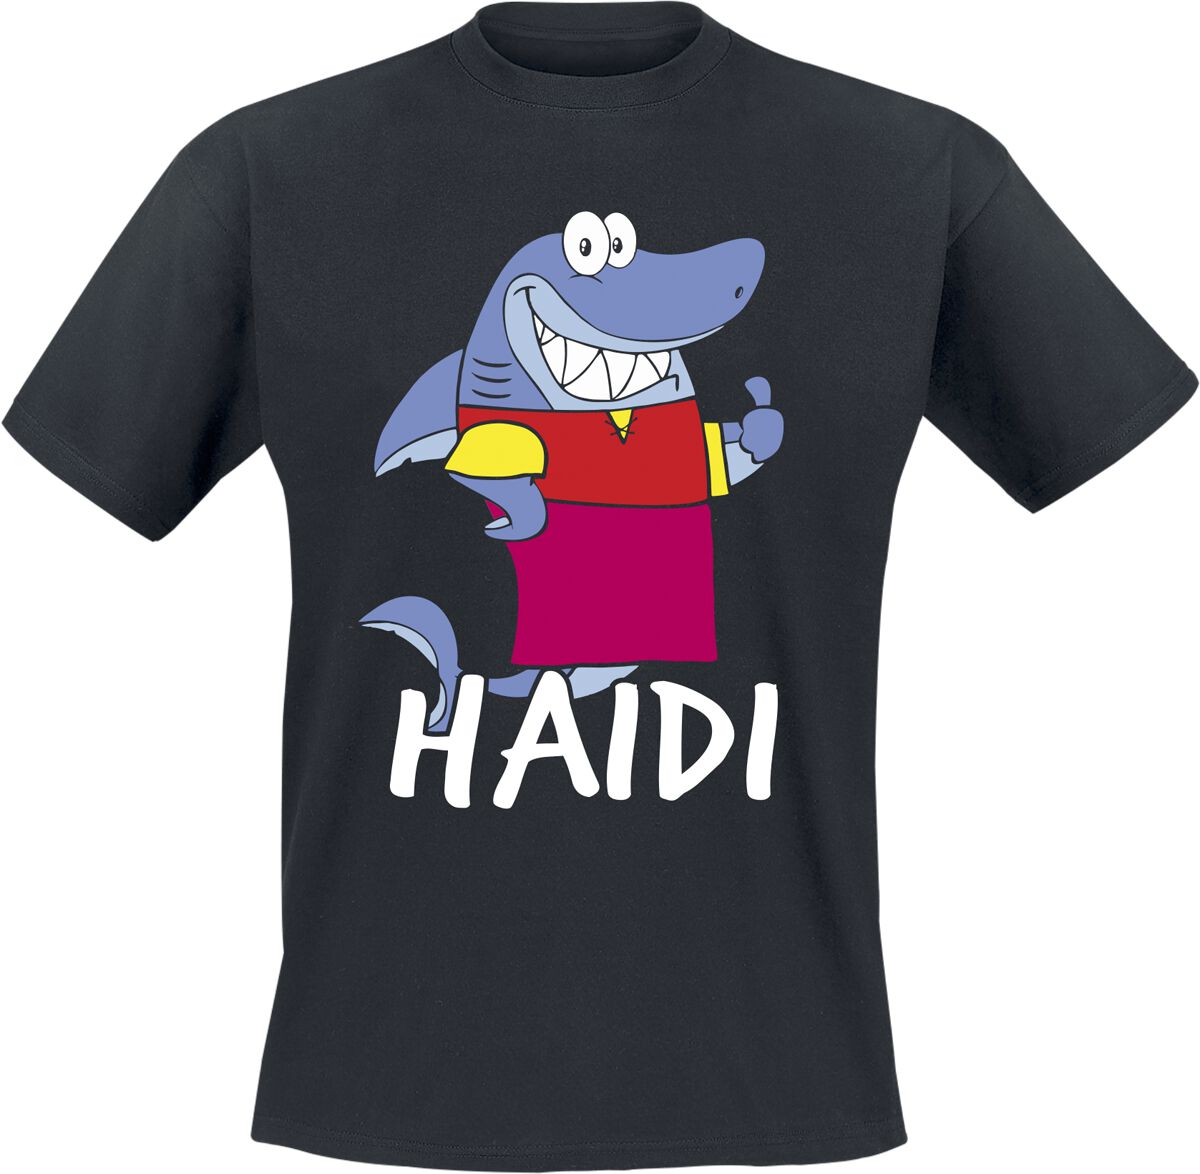 Tierisch T-Shirt - Haidi - M bis 3XL - für Männer - Größe L - schwarz